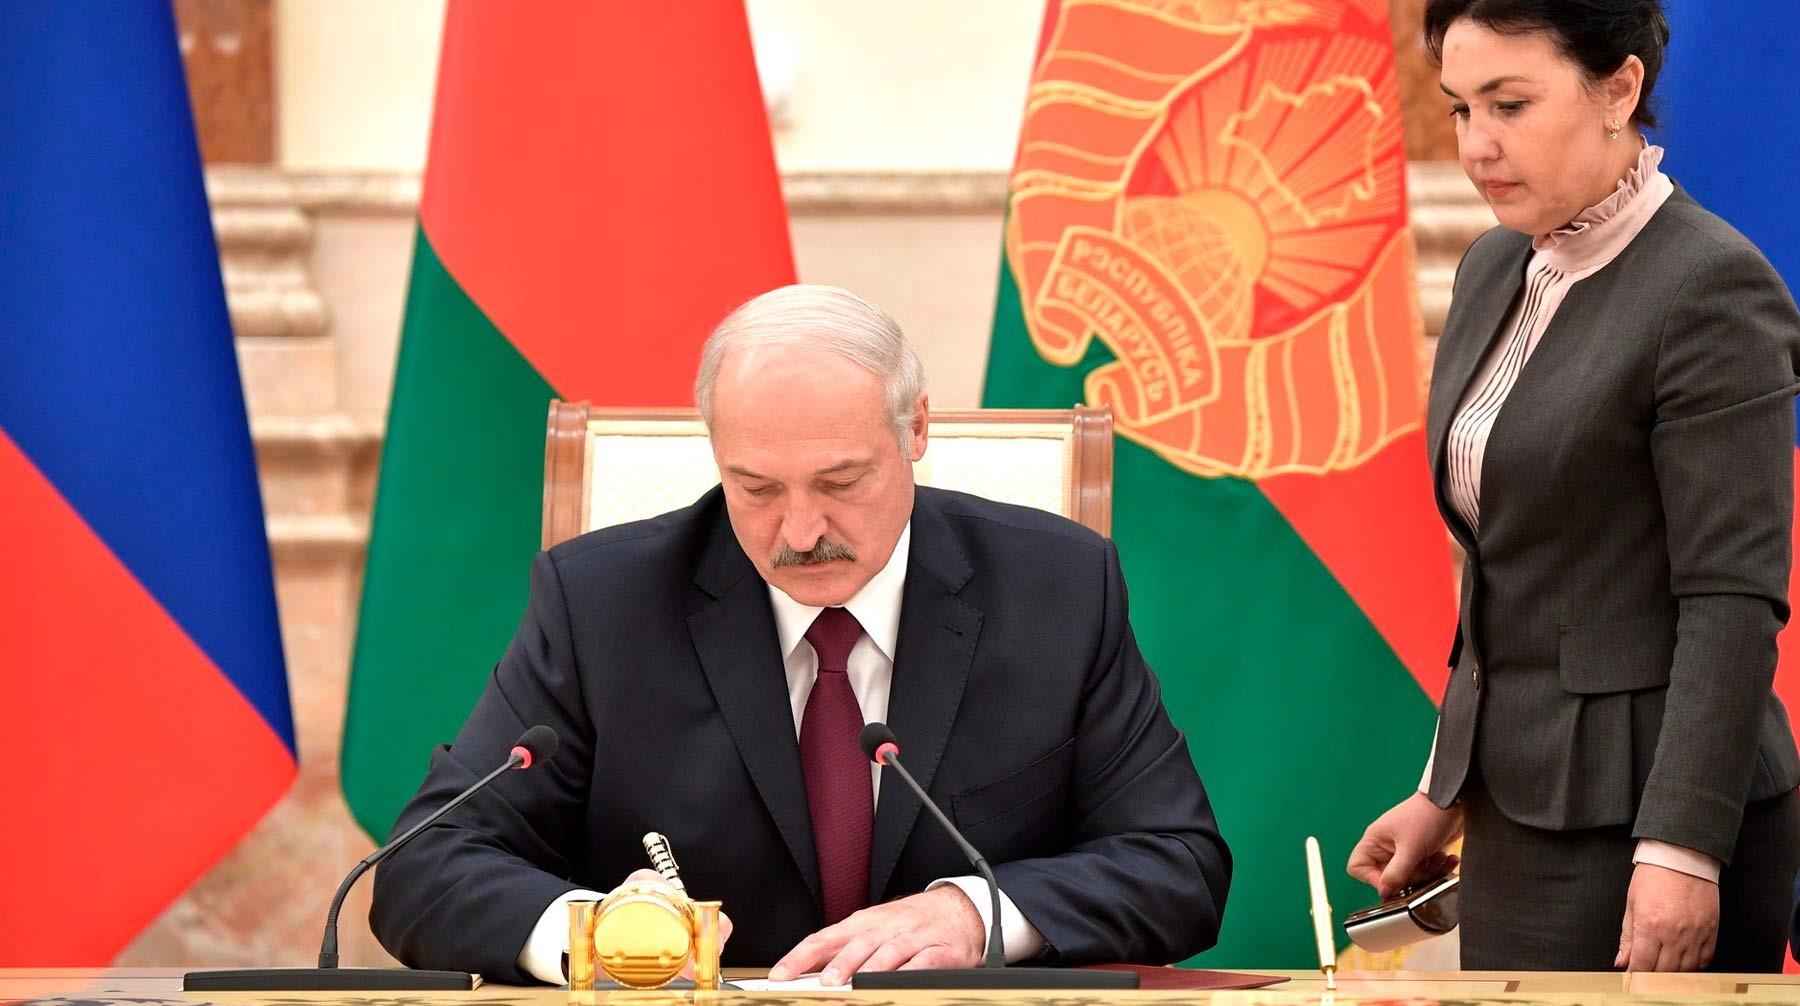 Dailystorm - Лукашенко отправил правительство Белоруссии в отставку